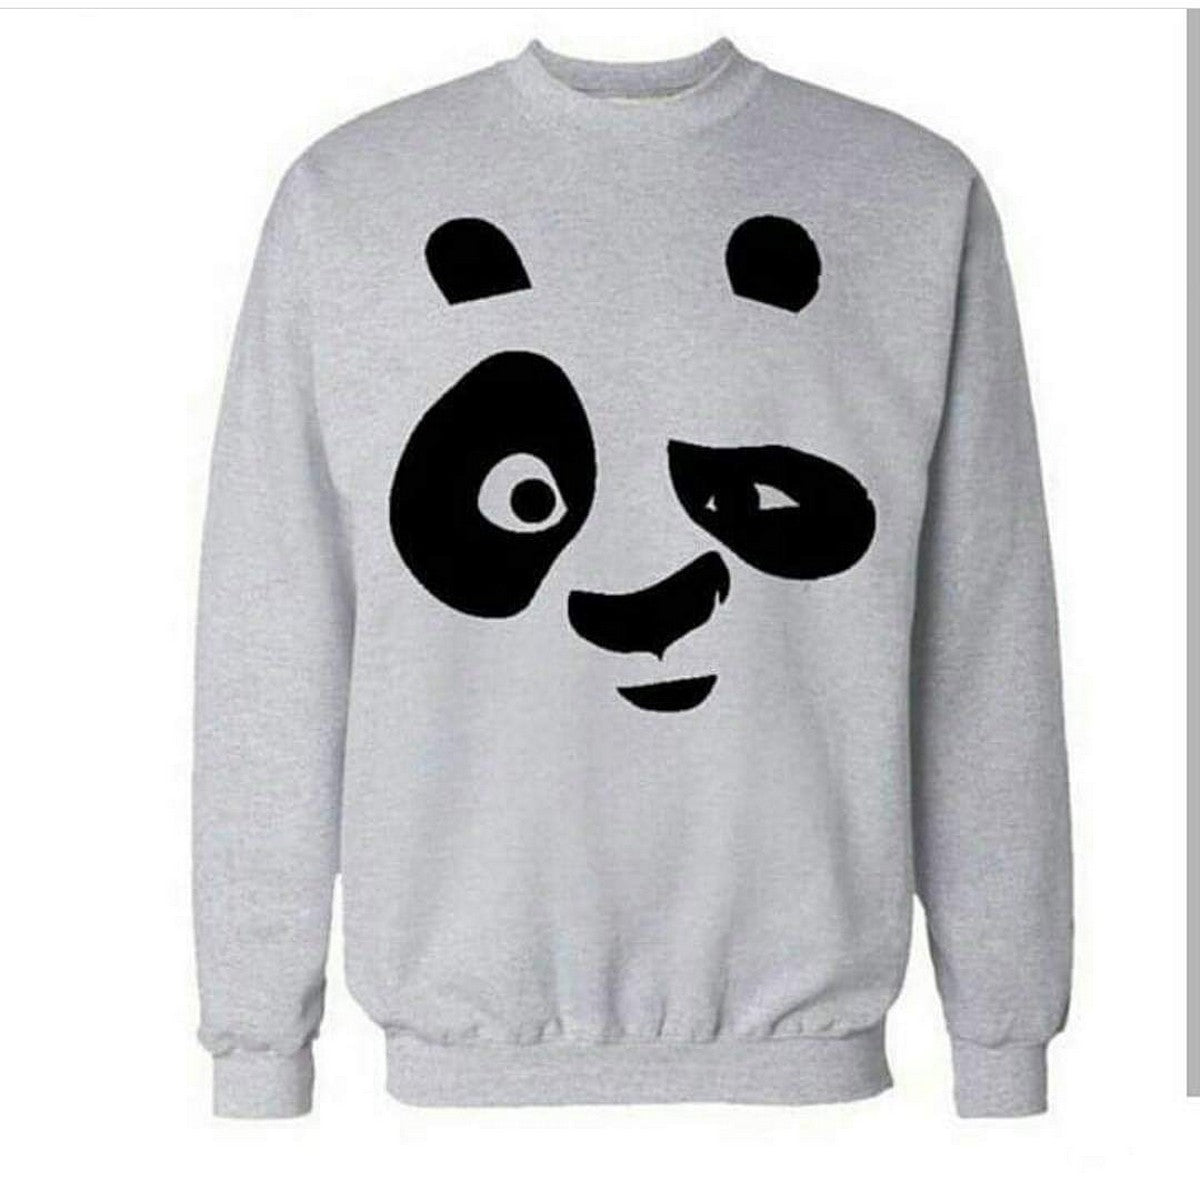 Grey Panda Fleece Full Sleeves Pull Over Sweatshirt For Women